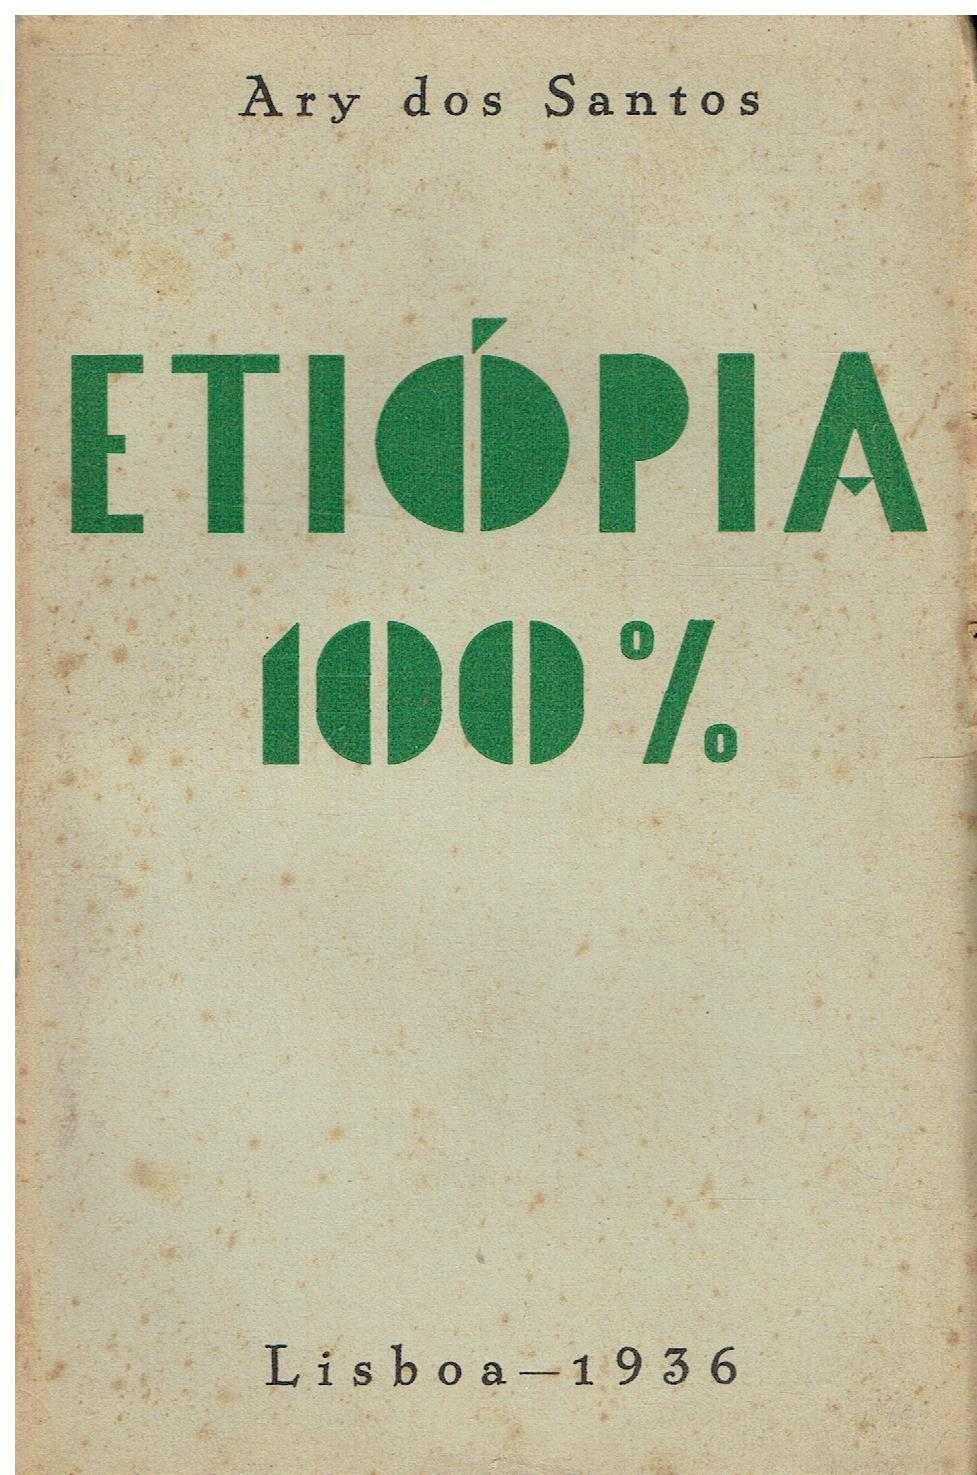 7374

Etiópia 100%
de Ary dos Santos